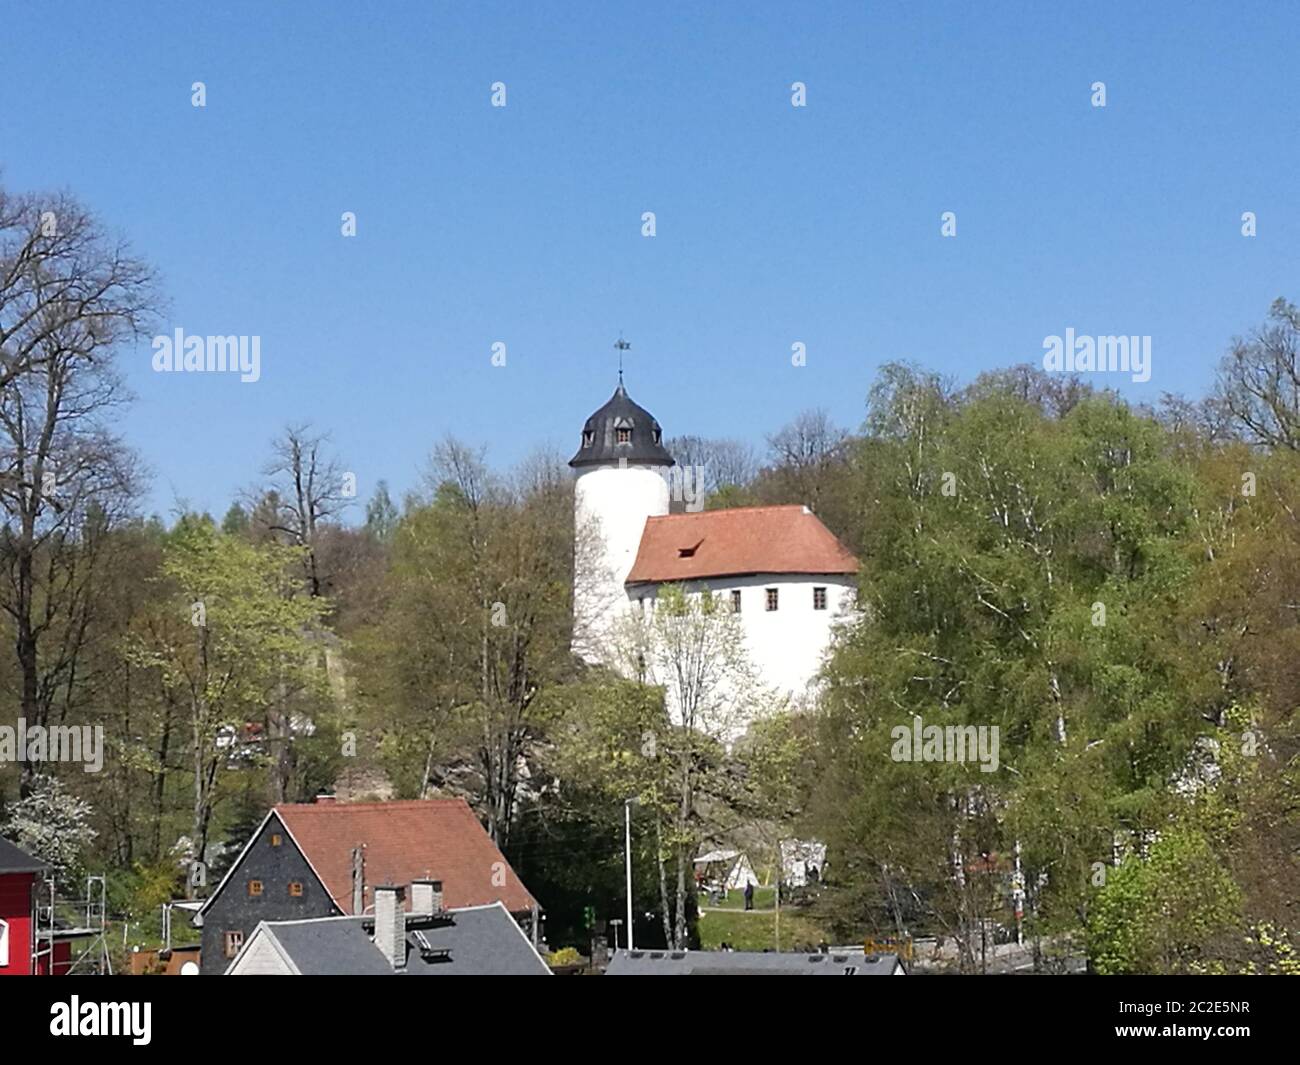 Blick über Hausdächer zur Burg Rabenstein, mittelalterliche Burganlage in Chemnitz in Sachsen, Deutschland, weiße Burganlage mit rotem Dach und einem Stockfoto